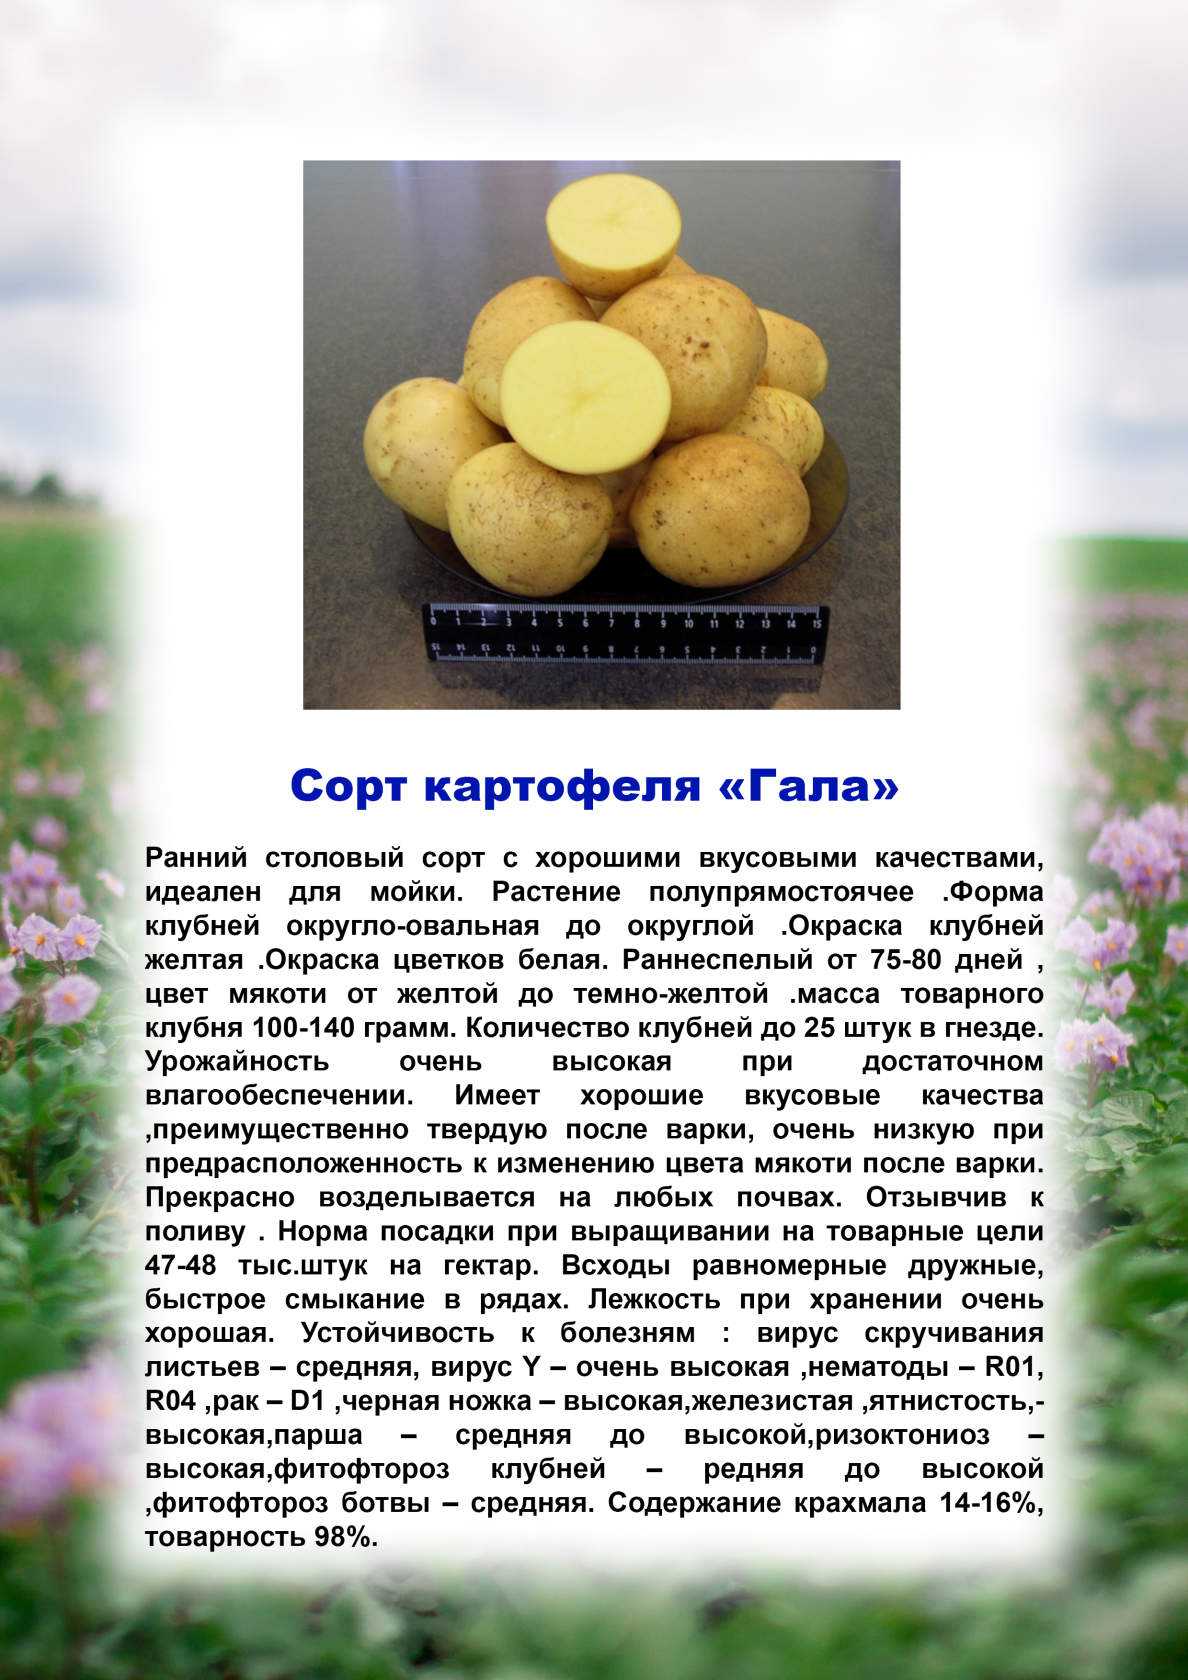 Картофель утро раннее: описание и характеристика сорта, урожайность с фото